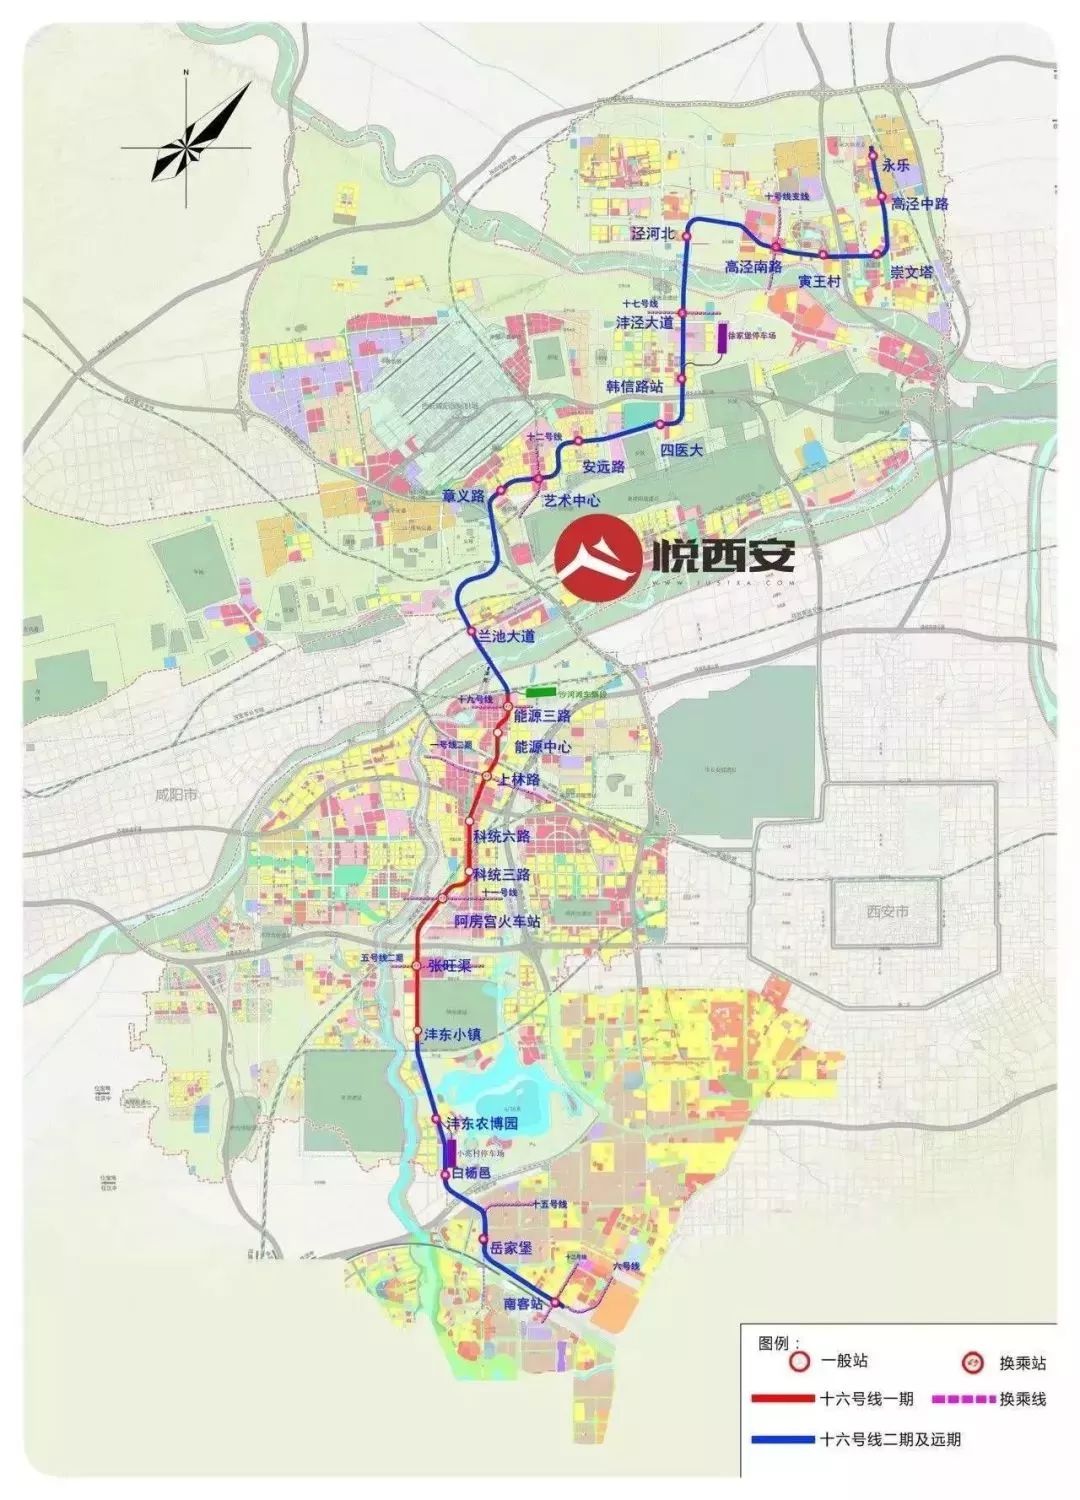 2019—2024年,西安要规划建设这些地铁线路!